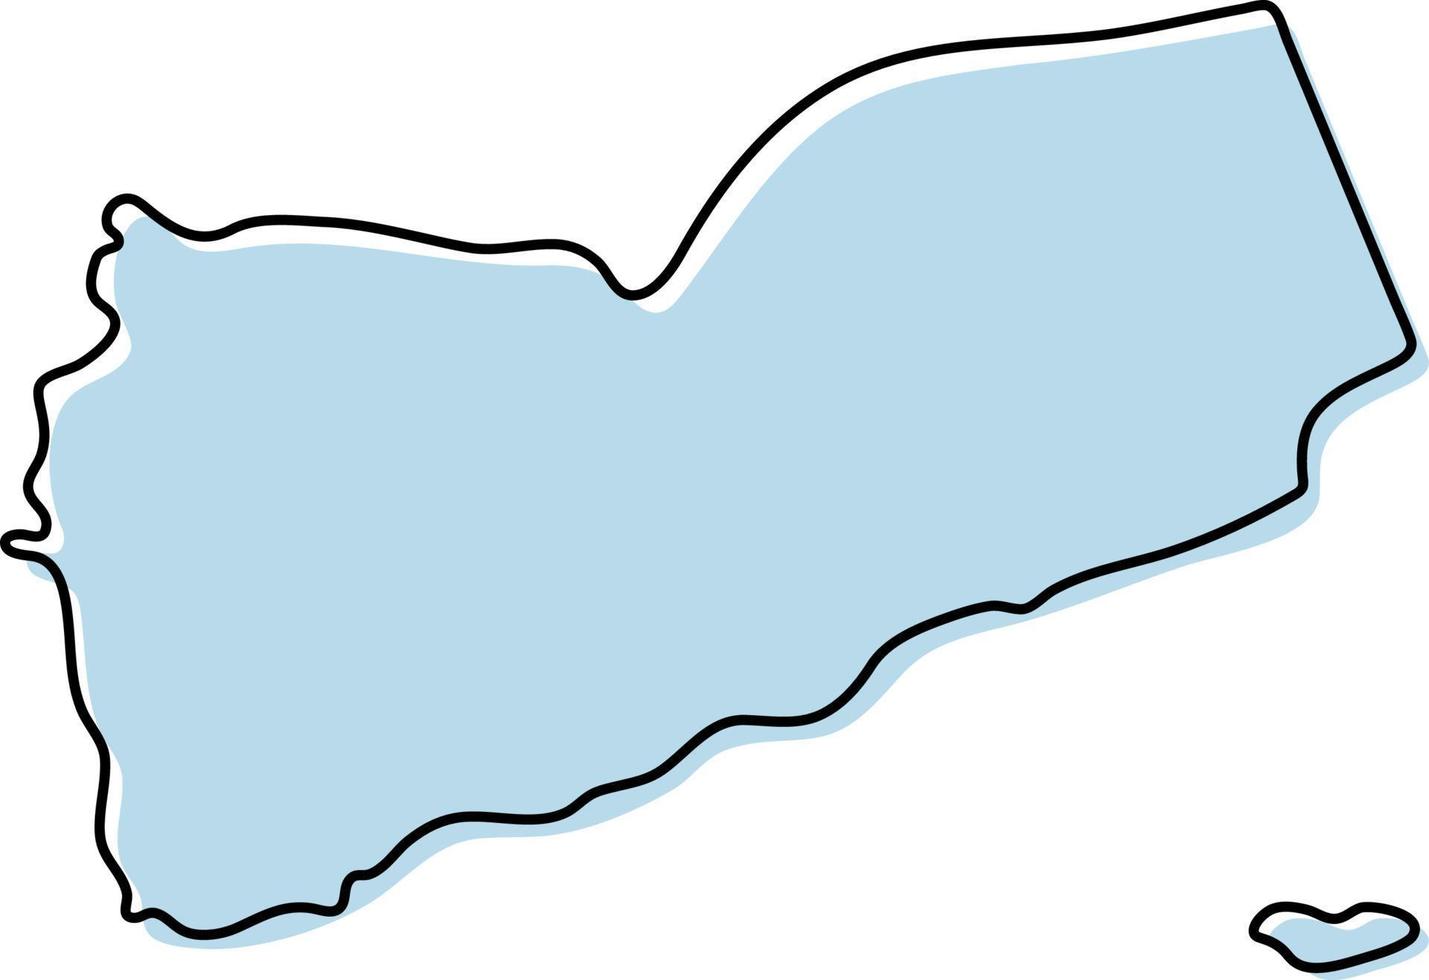 gestileerde eenvoudige overzichtskaart van het pictogram van Jemen. blauwe schetskaart van jemen vectorillustratie vector